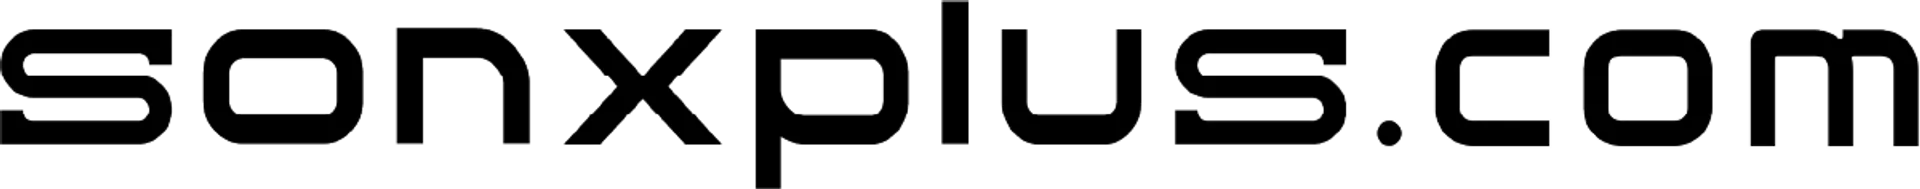 SON X PLUS logo de circulaire